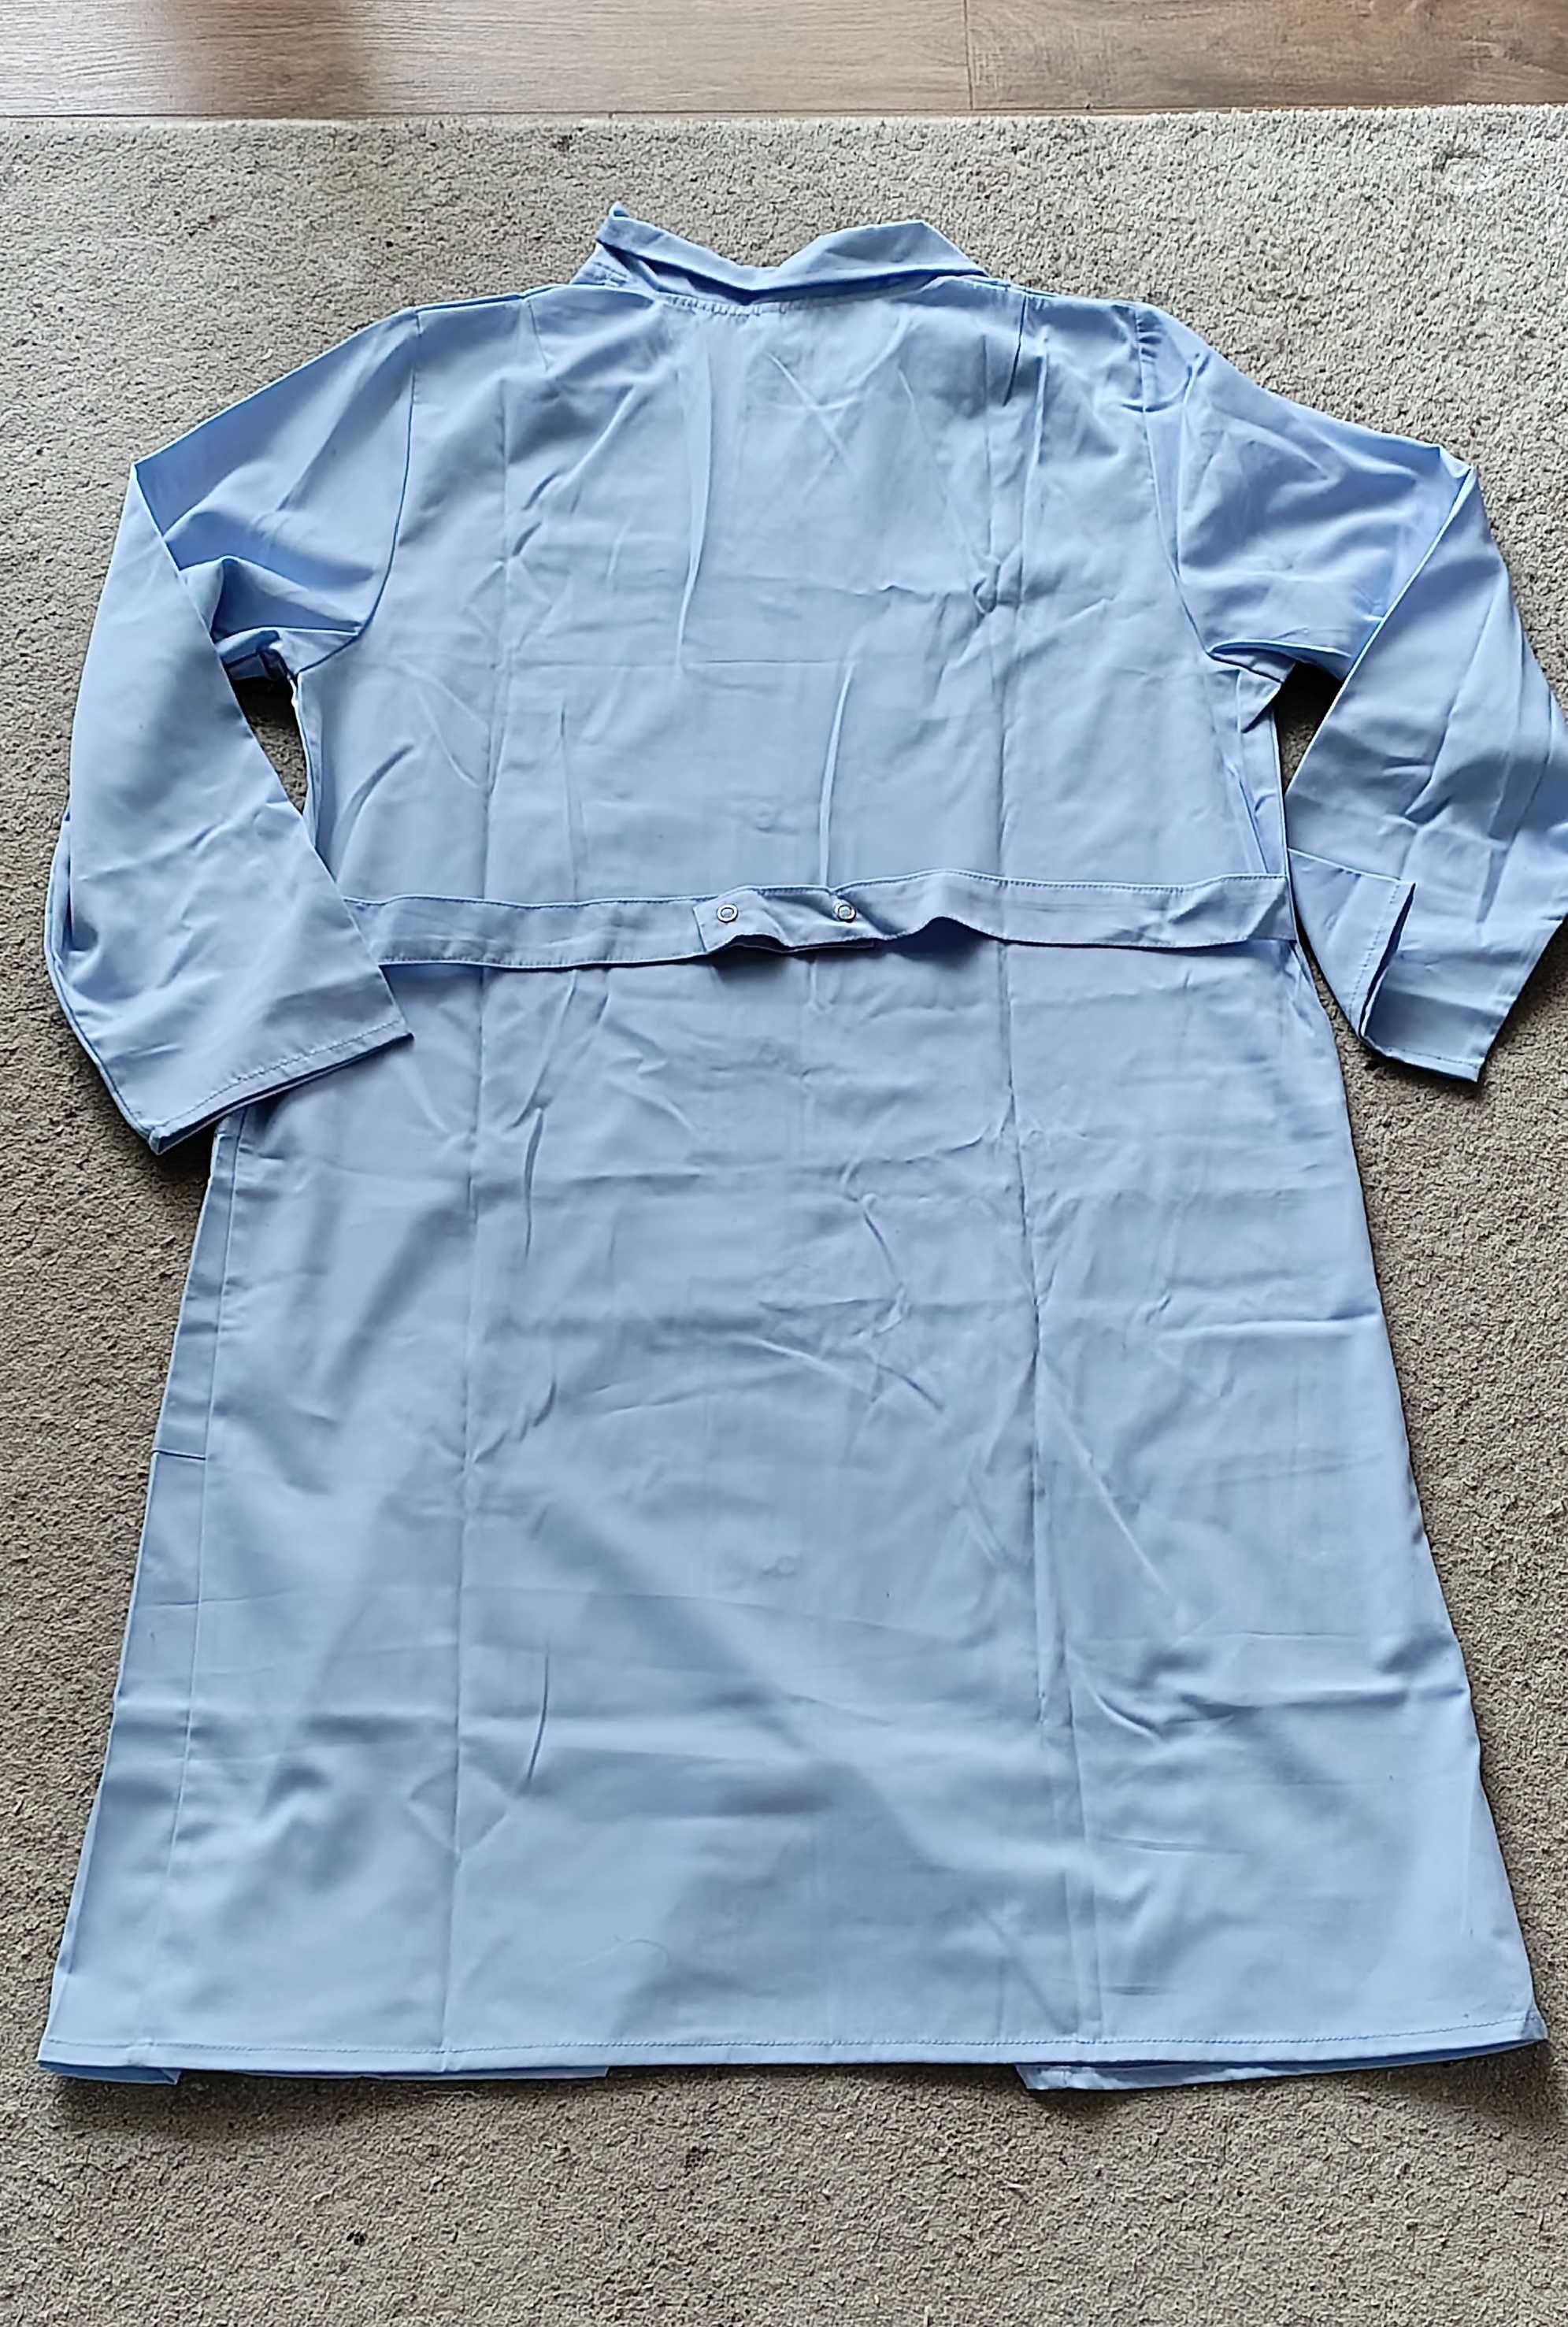 Nowy błękitny fartuch medyczny/ uniform w rozm L /40